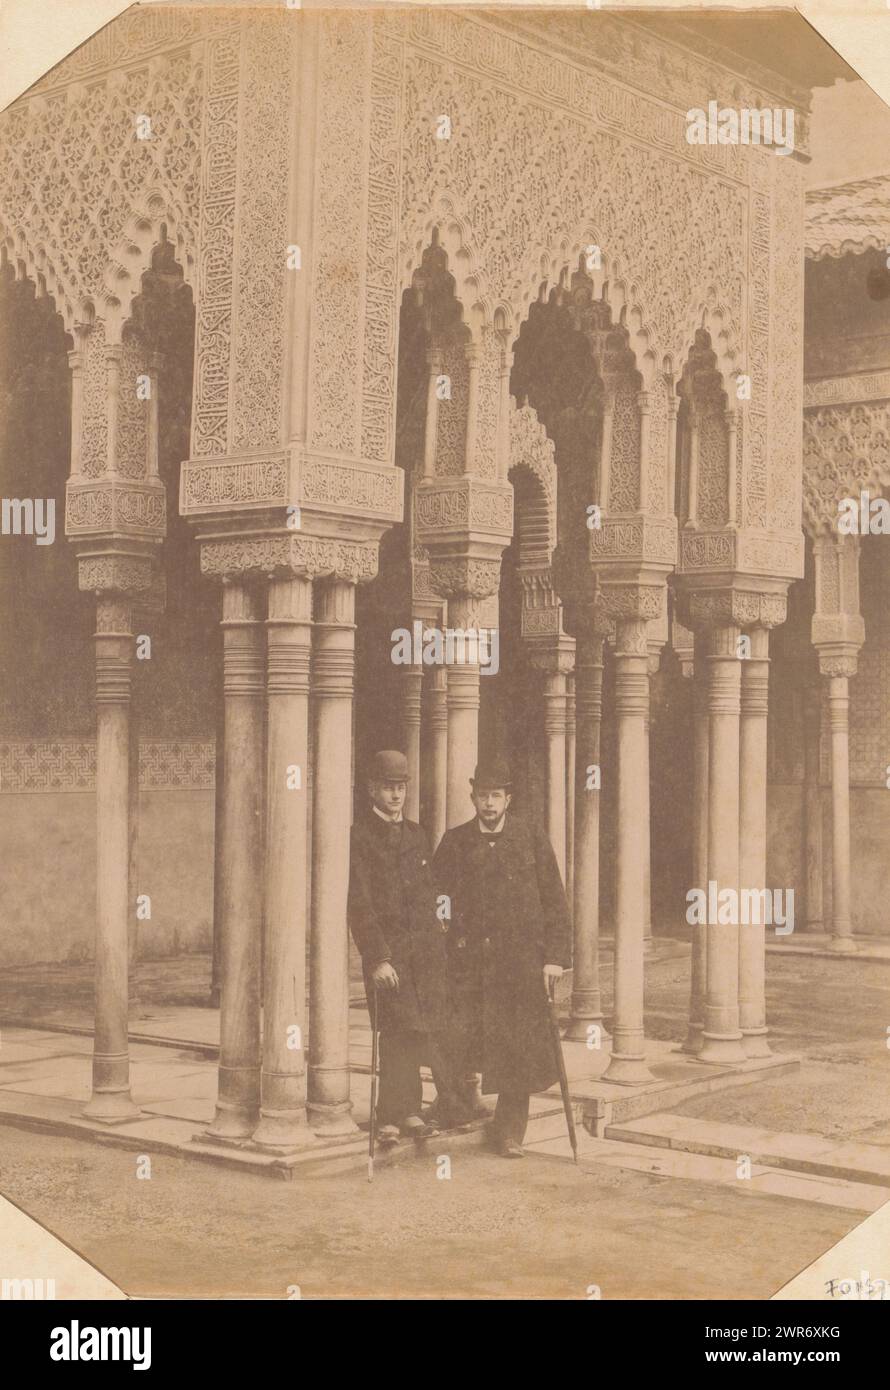 Alex. J. Marks et Joh. G. Heil au Patio de los Leones dans l'Alhambra, cette photo fait partie d'un album., anonyme, 12-Mar-1892, support photographique, tirage albumen, hauteur 236 mm × largeur 168 mm, photographie Banque D'Images